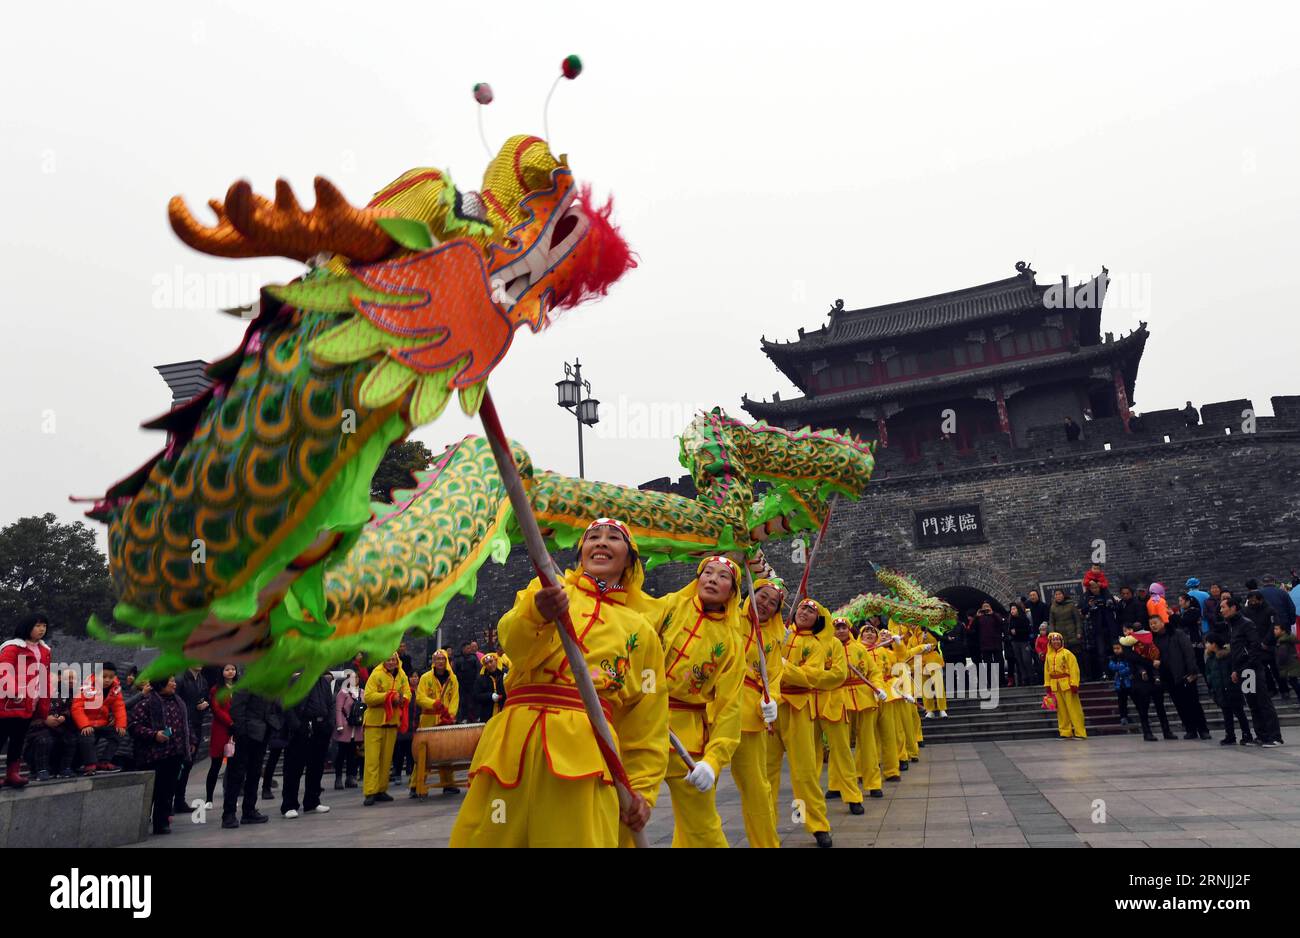 Les gens exécutent la danse du dragon pour célébrer la fête du printemps, ou le nouvel an lunaire chinois, dans la ville de Xiangyang, province du Hubei, en Chine centrale, le 28 janvier 2017. (Ry) CHINA-SPRING FESTIVAL-DRAGON DANCE (CN) AnxFubin PUBLICATIONxNOTxINxCHN des célébrités dansent le dragon pour célébrer la fête du printemps ou le nouvel an lunaire chinois dans la ville de Xiang Yang Chine centrale S province du Hubei Jan 28 2017 Ry China Spring Festival Dragon Dance CN PUBLICATIONxNOTxINxCHN Banque D'Images